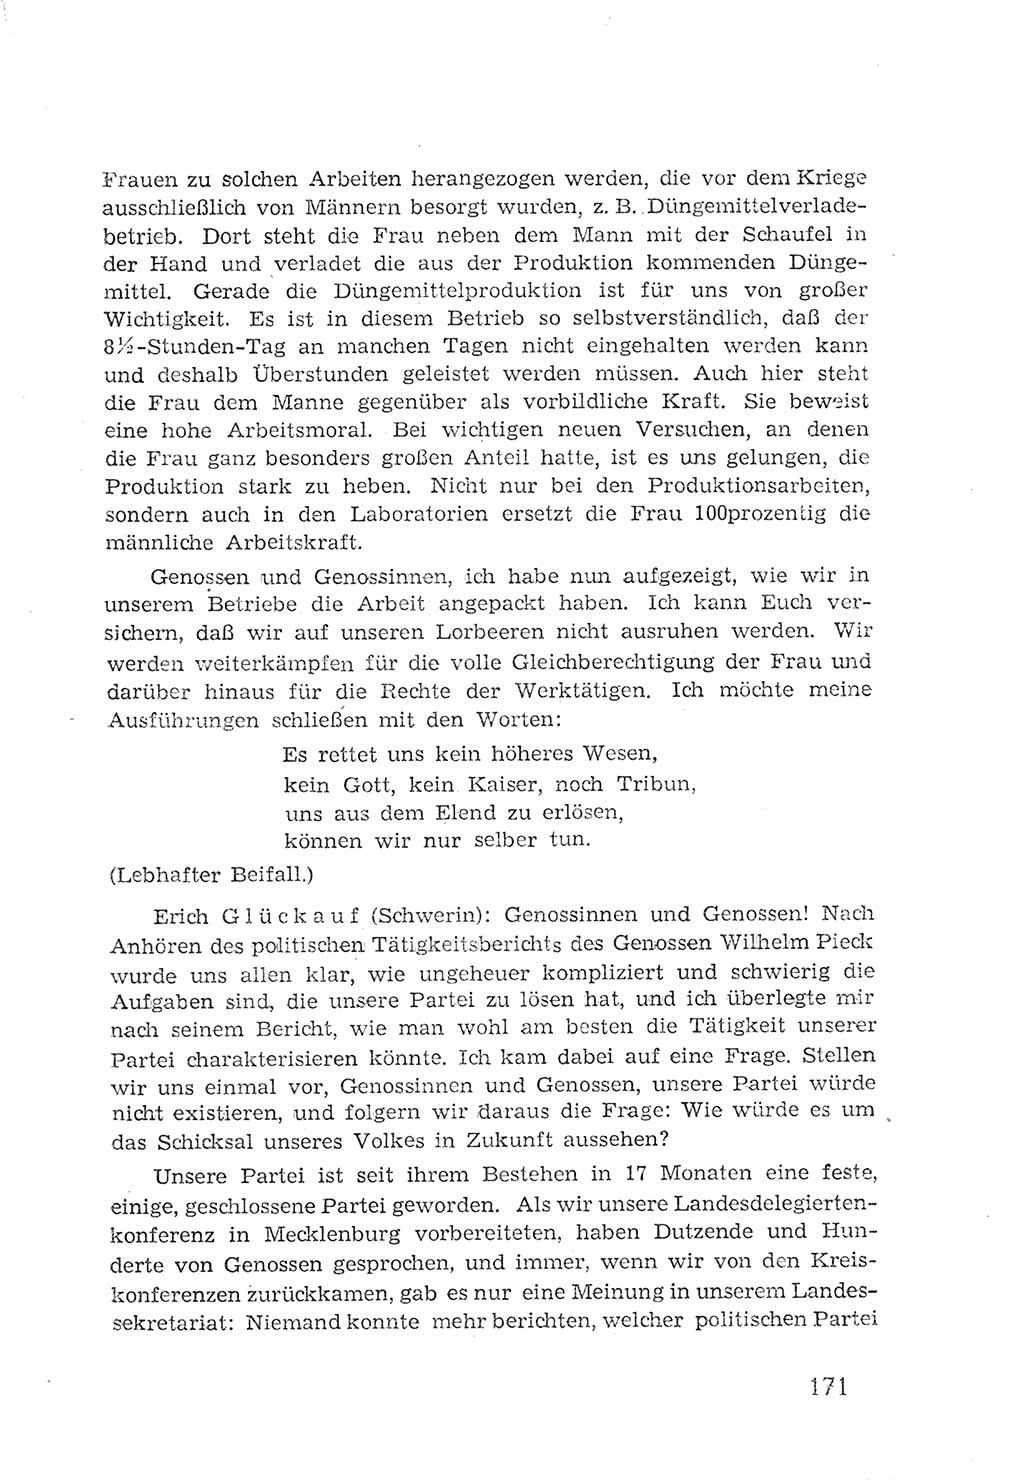 Protokoll der Verhandlungen des 2. Parteitages der Sozialistischen Einheitspartei Deutschlands (SED) [Sowjetische Besatzungszone (SBZ) Deutschlands] 1947, Seite 171 (Prot. Verh. 2. PT SED SBZ Dtl. 1947, S. 171)